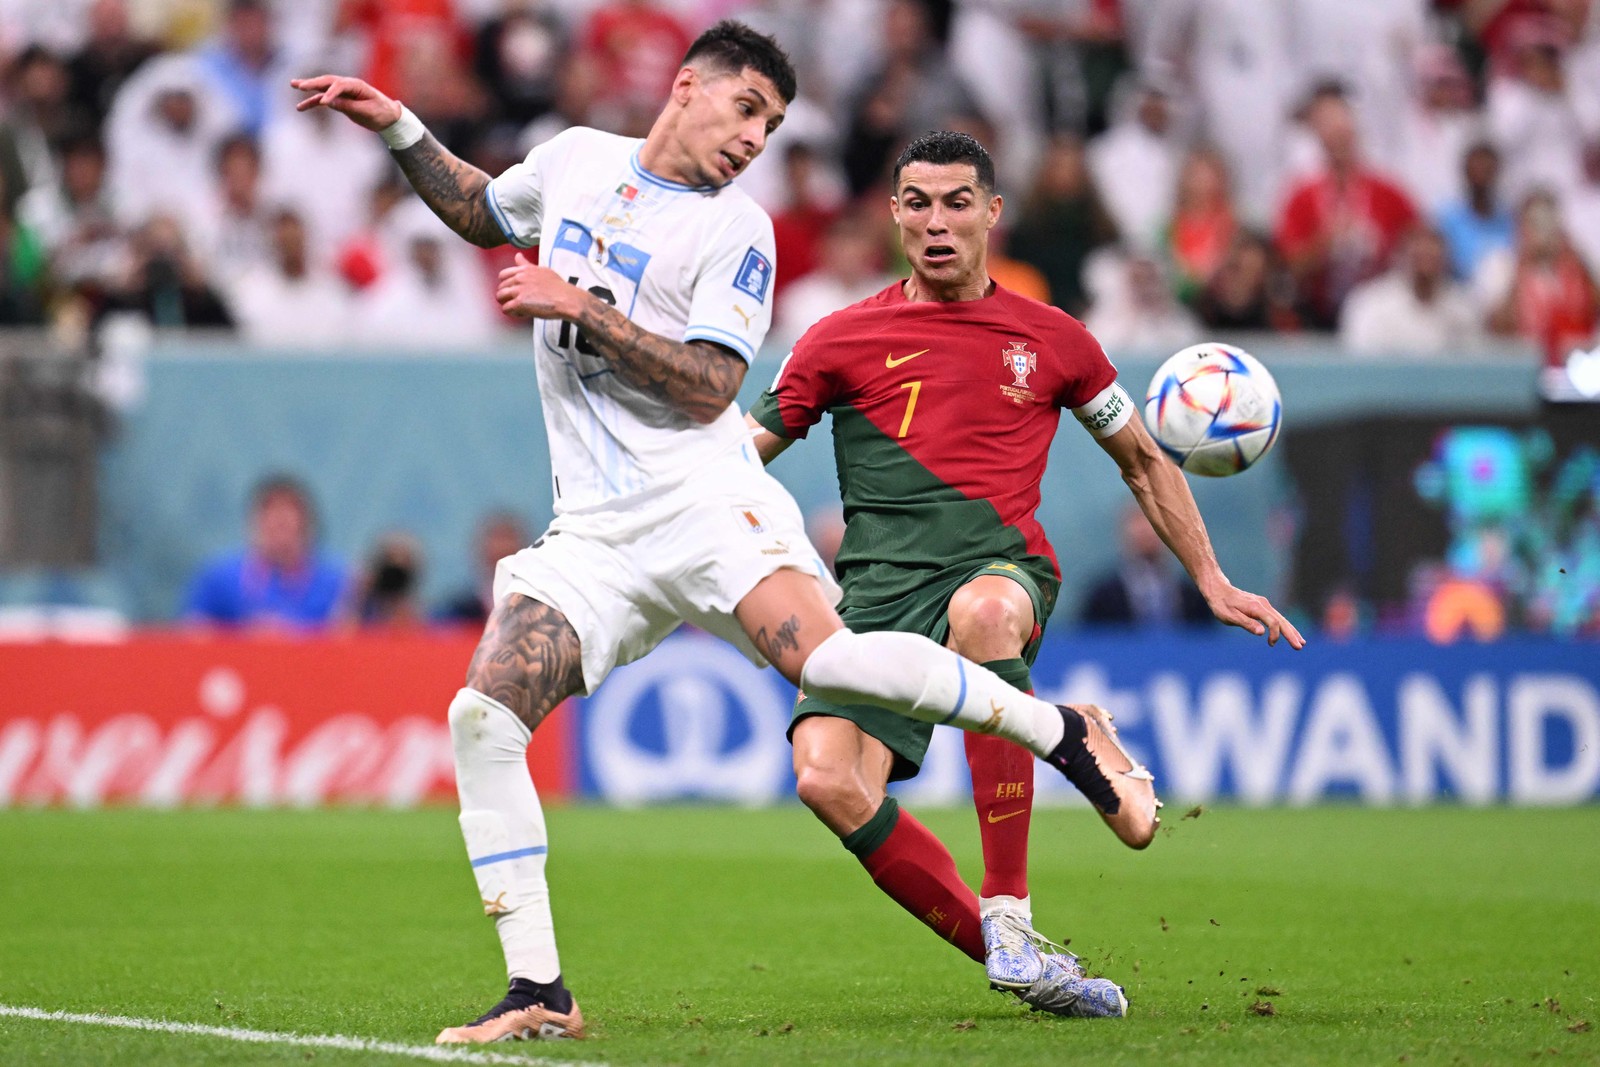 O zagueiro uruguaio Mathias Olivera luta pela bola com o atacante português Cristiano Ronaldo  — Foto: Kirill KUDRYAVTSEV / AFP